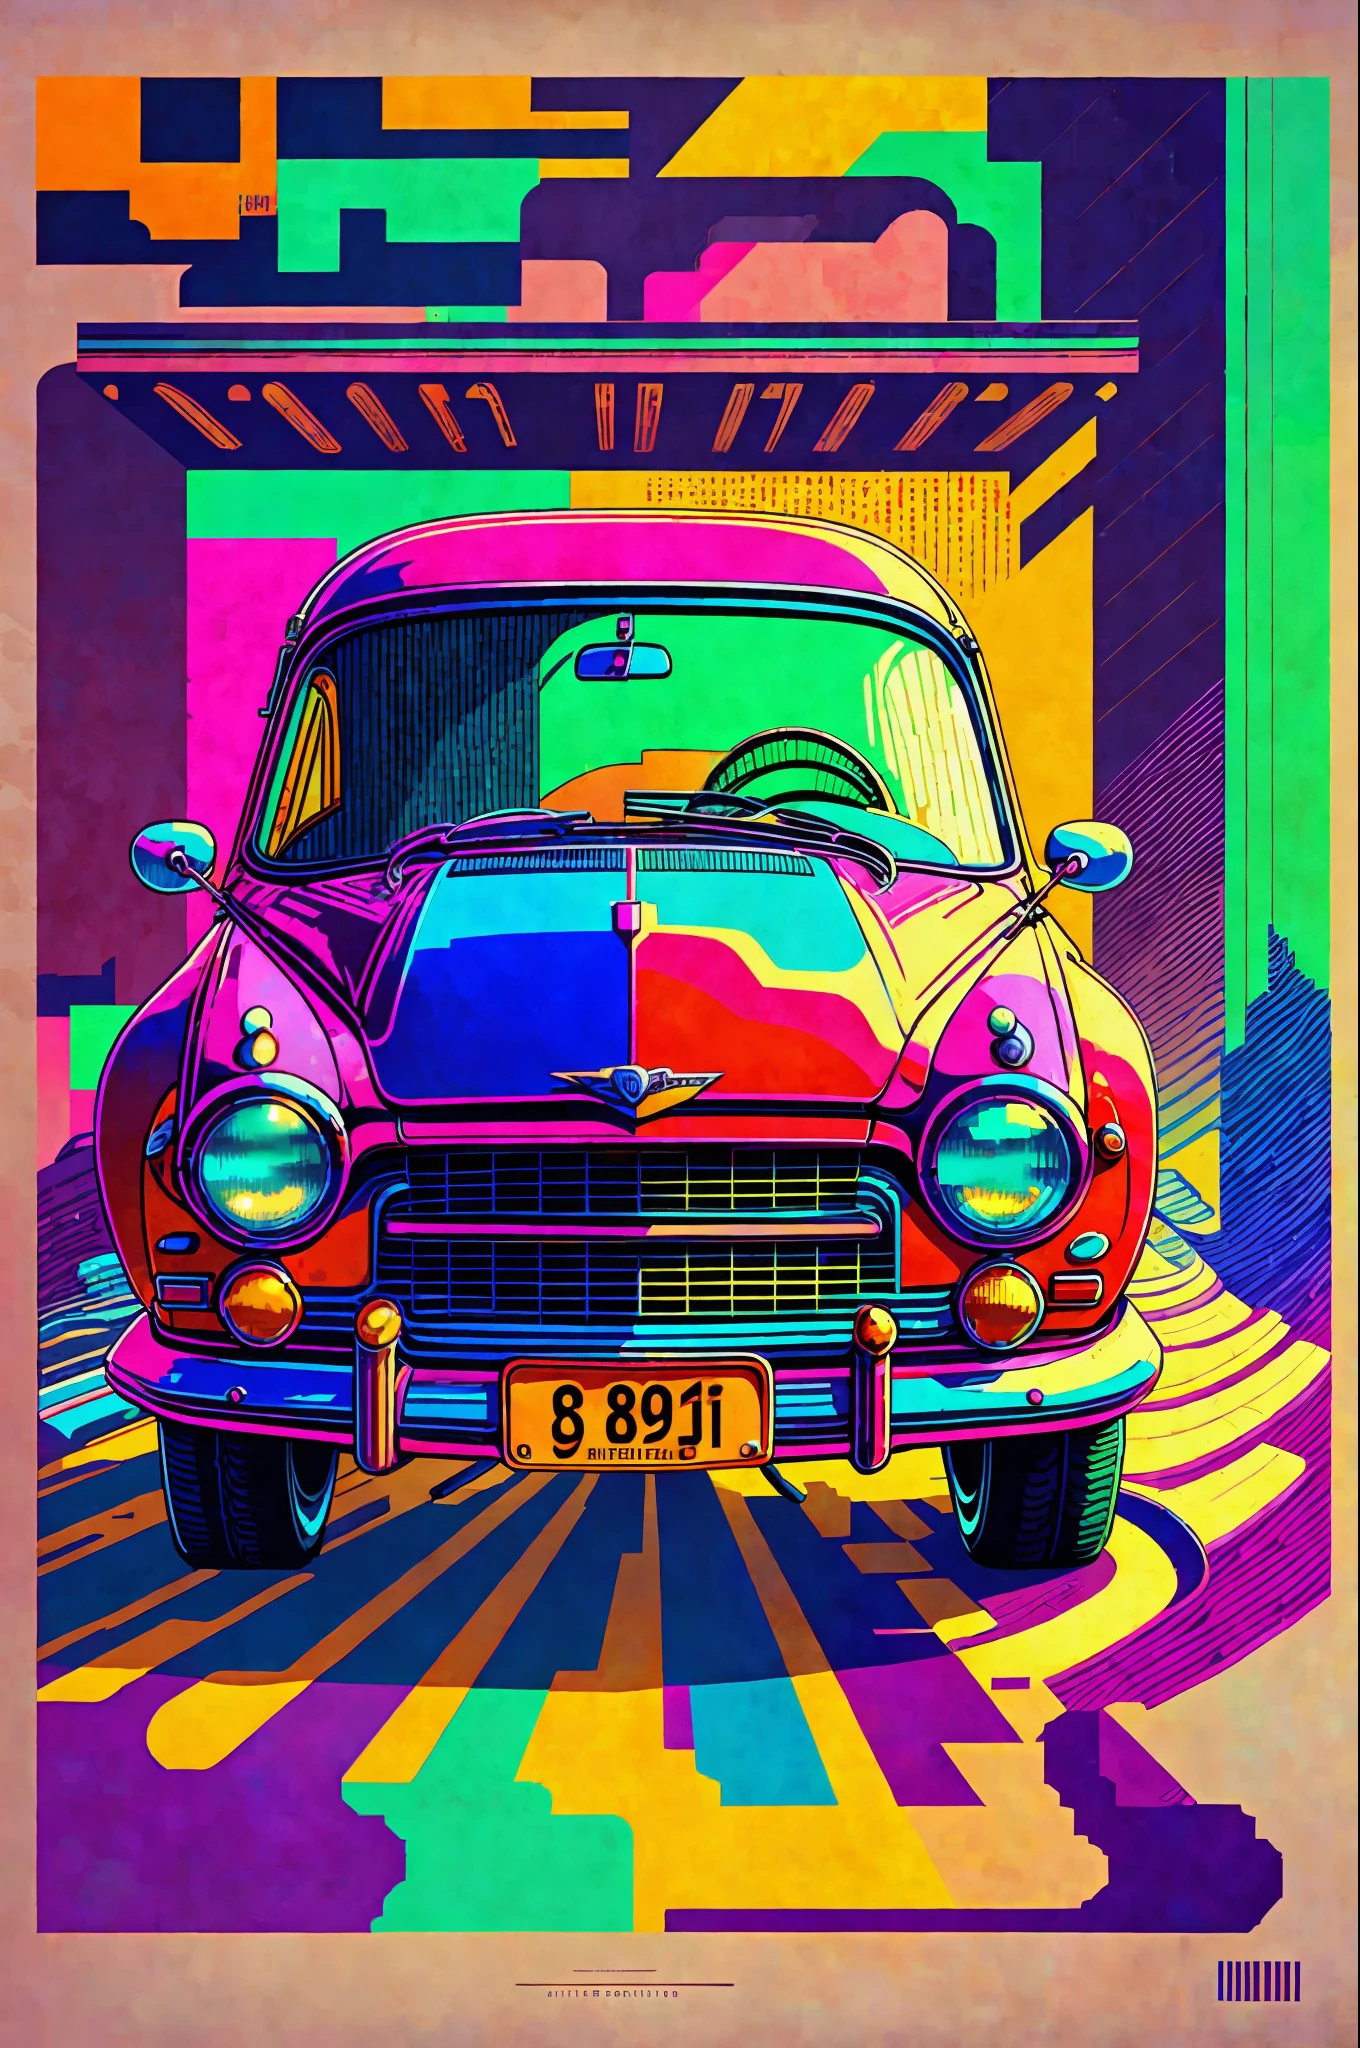 {걸작}: 픽셀 90년대 car. 복고풍 스타일 with vibrant colors. 노스탤지어 in prints. (너비: 800, 키: 600, 메서드: 오일러, 단계: 20, CFG 규모: 10, 씨앗: 12345, 고급: 2)
태그: 걸작, 자동차, 픽셀, 90년대, 복고풍 스타일, 생생한 색상, 노스탤지어. --자동 --s2